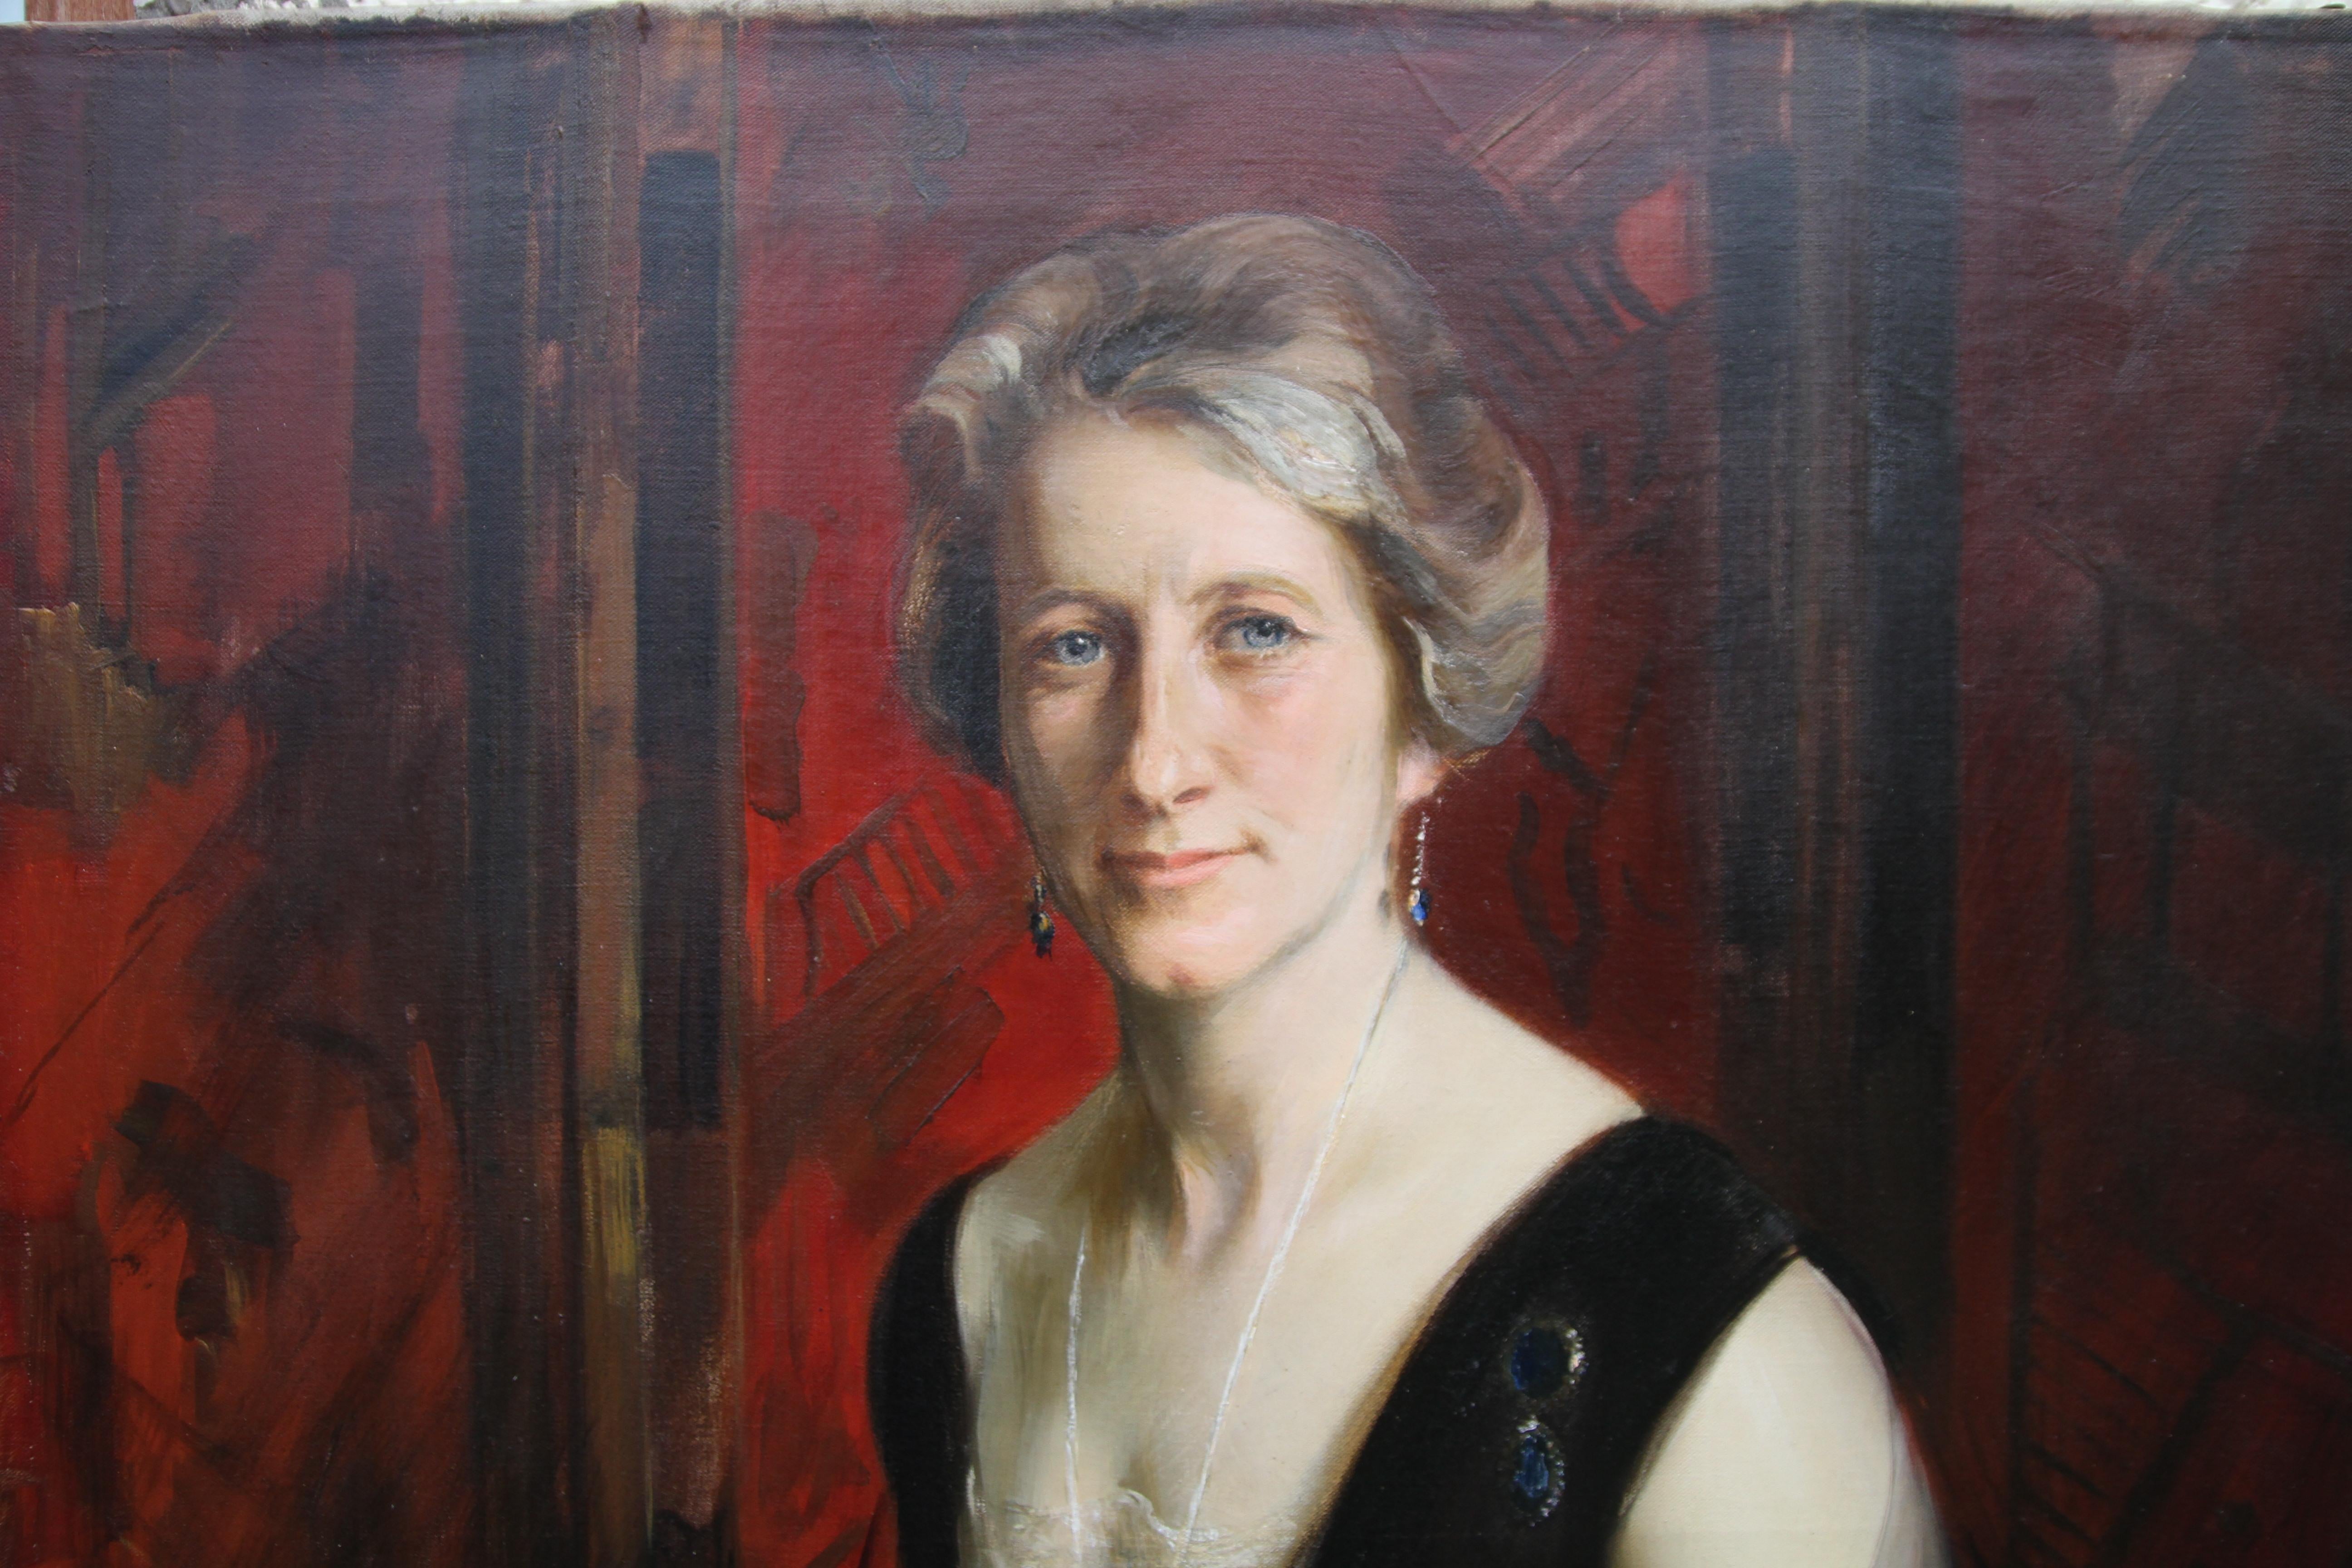 Ein atemberaubendes Porträt-Ölgemälde von Violet Ann Gilbert, das 1929 von James Peter Quinn gemalt und im Pariser Salon desselben Jahres ausgestellt wurde. Ein schönes Porträt einer jungen Frau aus den zwanziger Jahren. In ausgezeichnetem Zustand